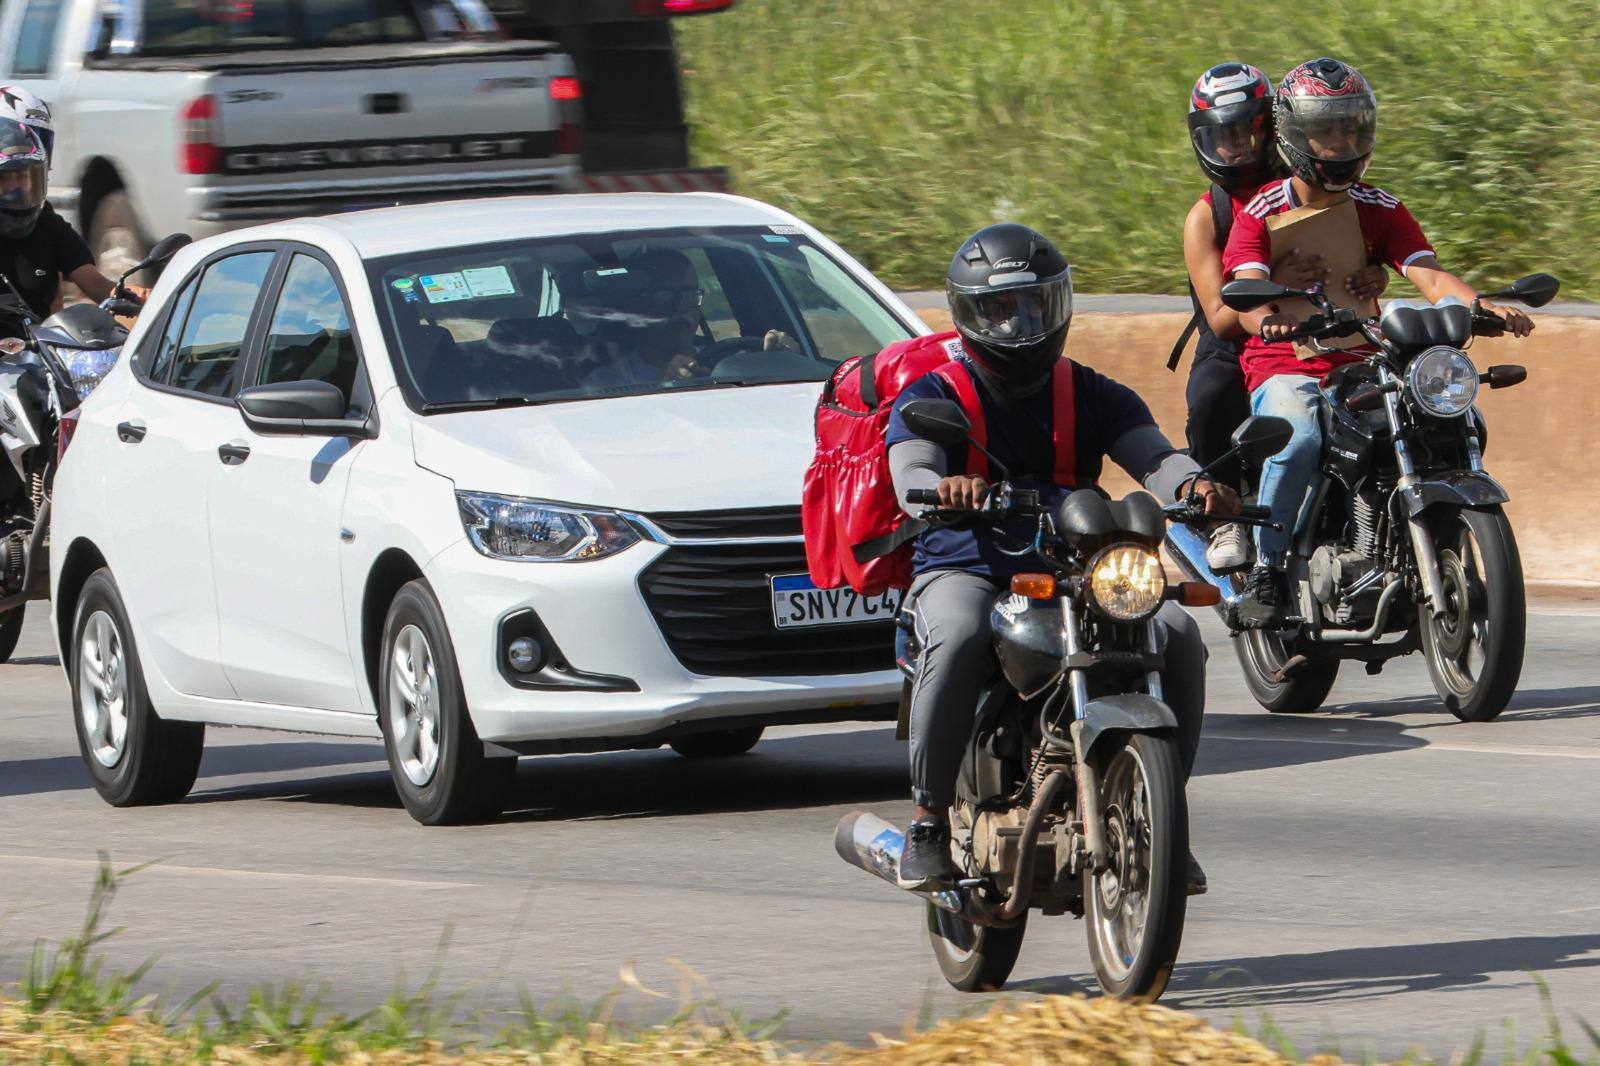 Motociclistas, especialmente os profissionais, estão instituindo a prática da “direita livre” no dia a dia de Belo Horizonte